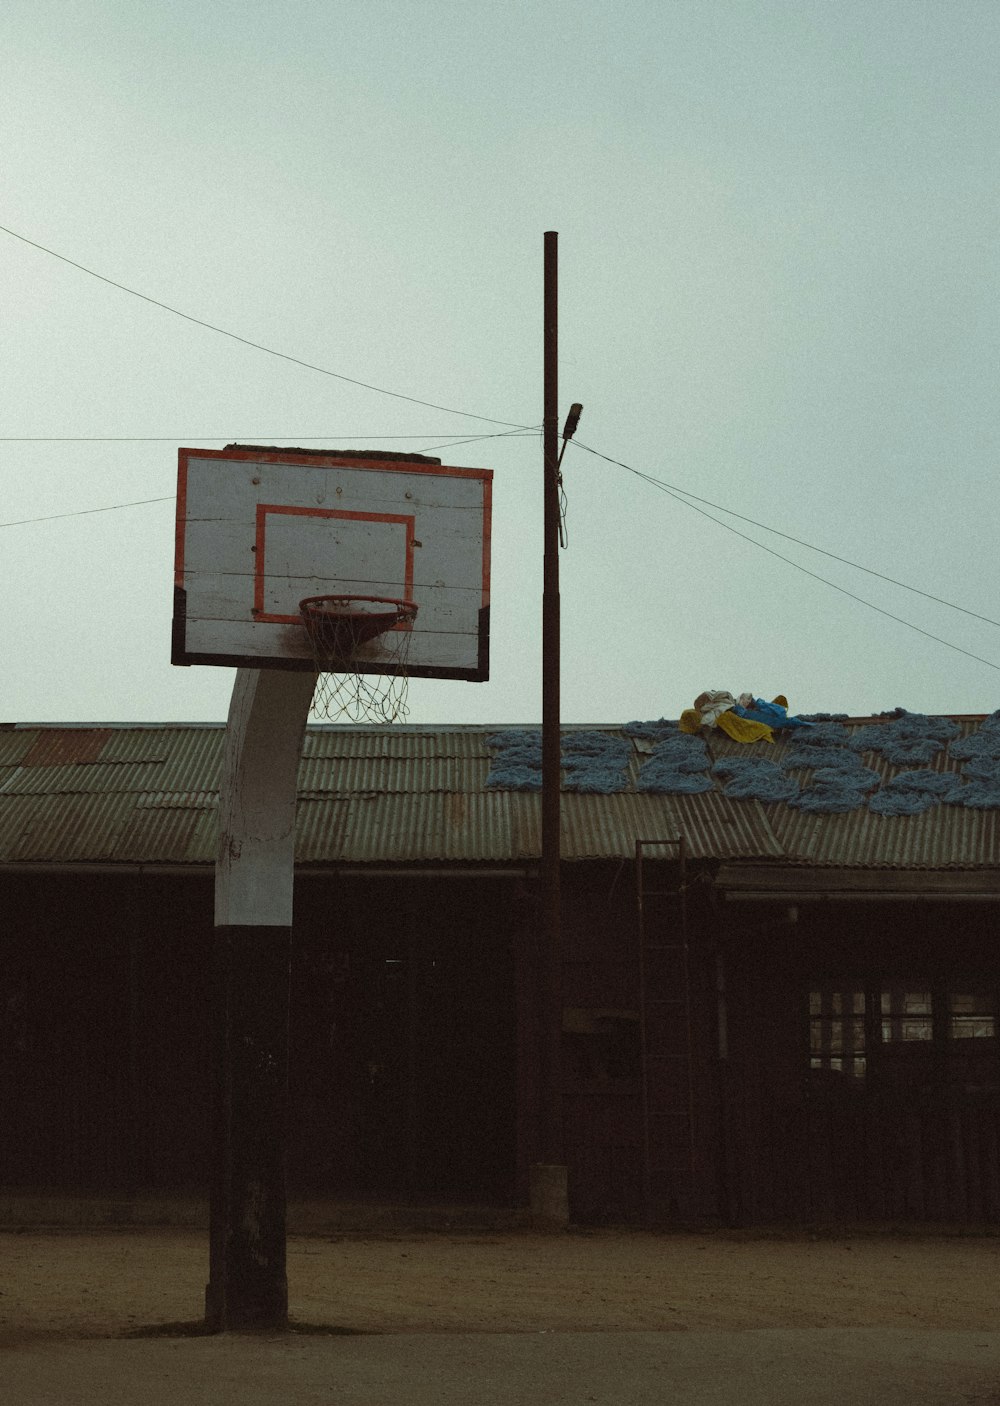 建物の前にあるバスケットボールのフープ